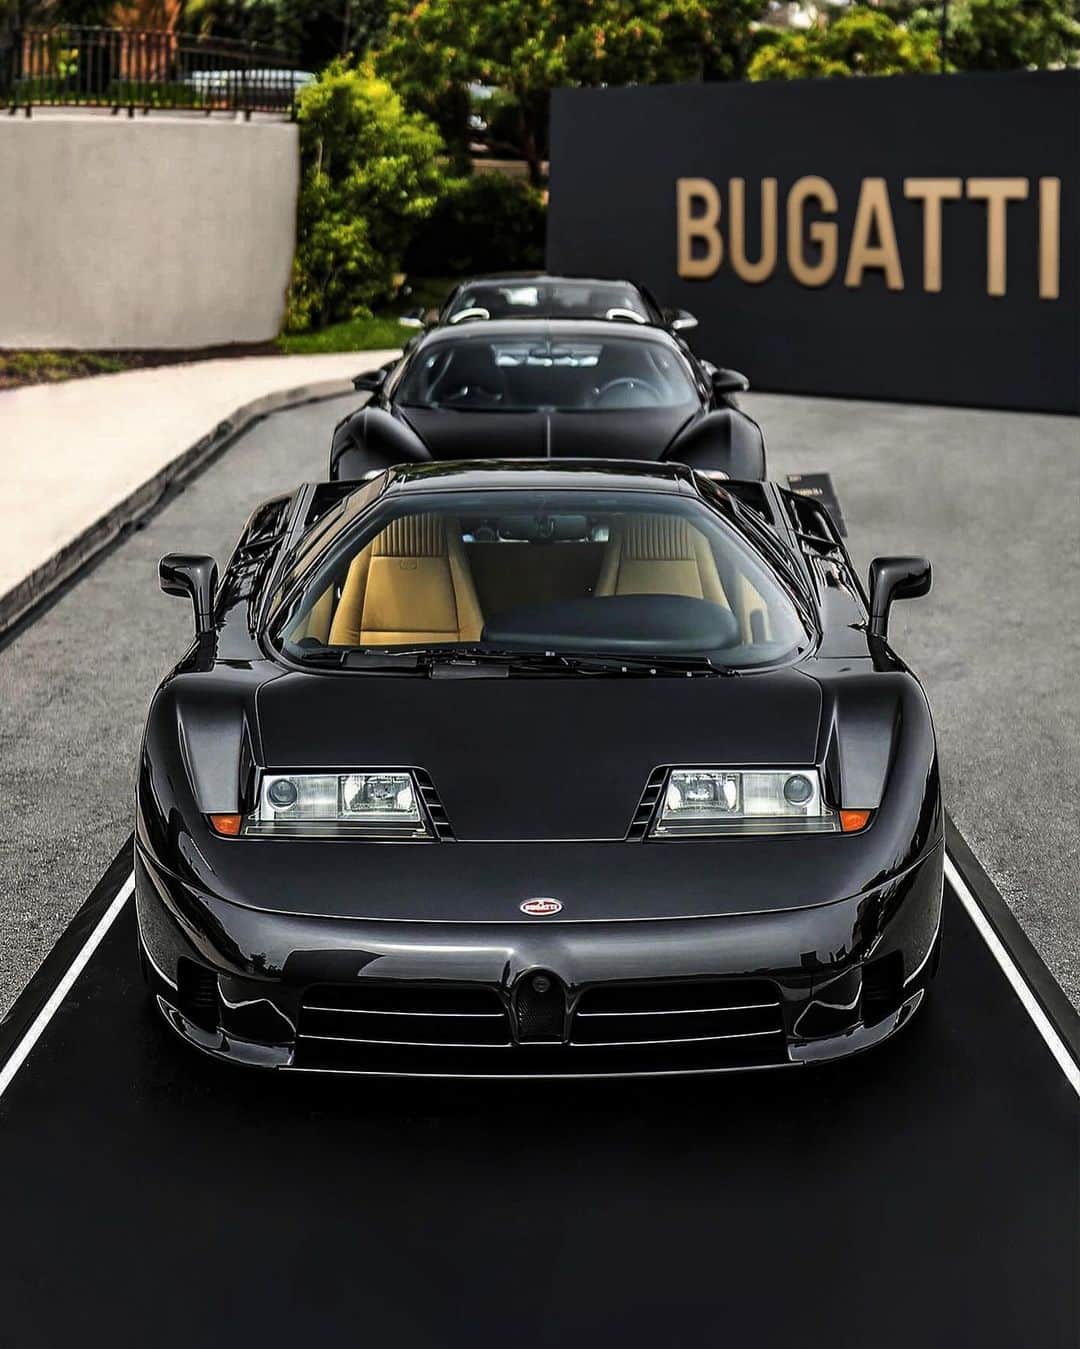 ブガッティのインスタグラム：「The modern BUGATTI hyper sports car lineage: EB110, VEYRON 16.4 and CHIRON, all finished in a variety of sublime Black exterior treatments.  Showcased as part of Le Domaine BUGATTI, the triple Black BUGATTI exhibit enthralled joyful visitors, each model embodies the very definition of high performance for its respected era.  #BUGATTI #LeDomaineBUGATTI #EB110 #VEYRON #CHIRON – WLTP: bugatti.link/consumption」